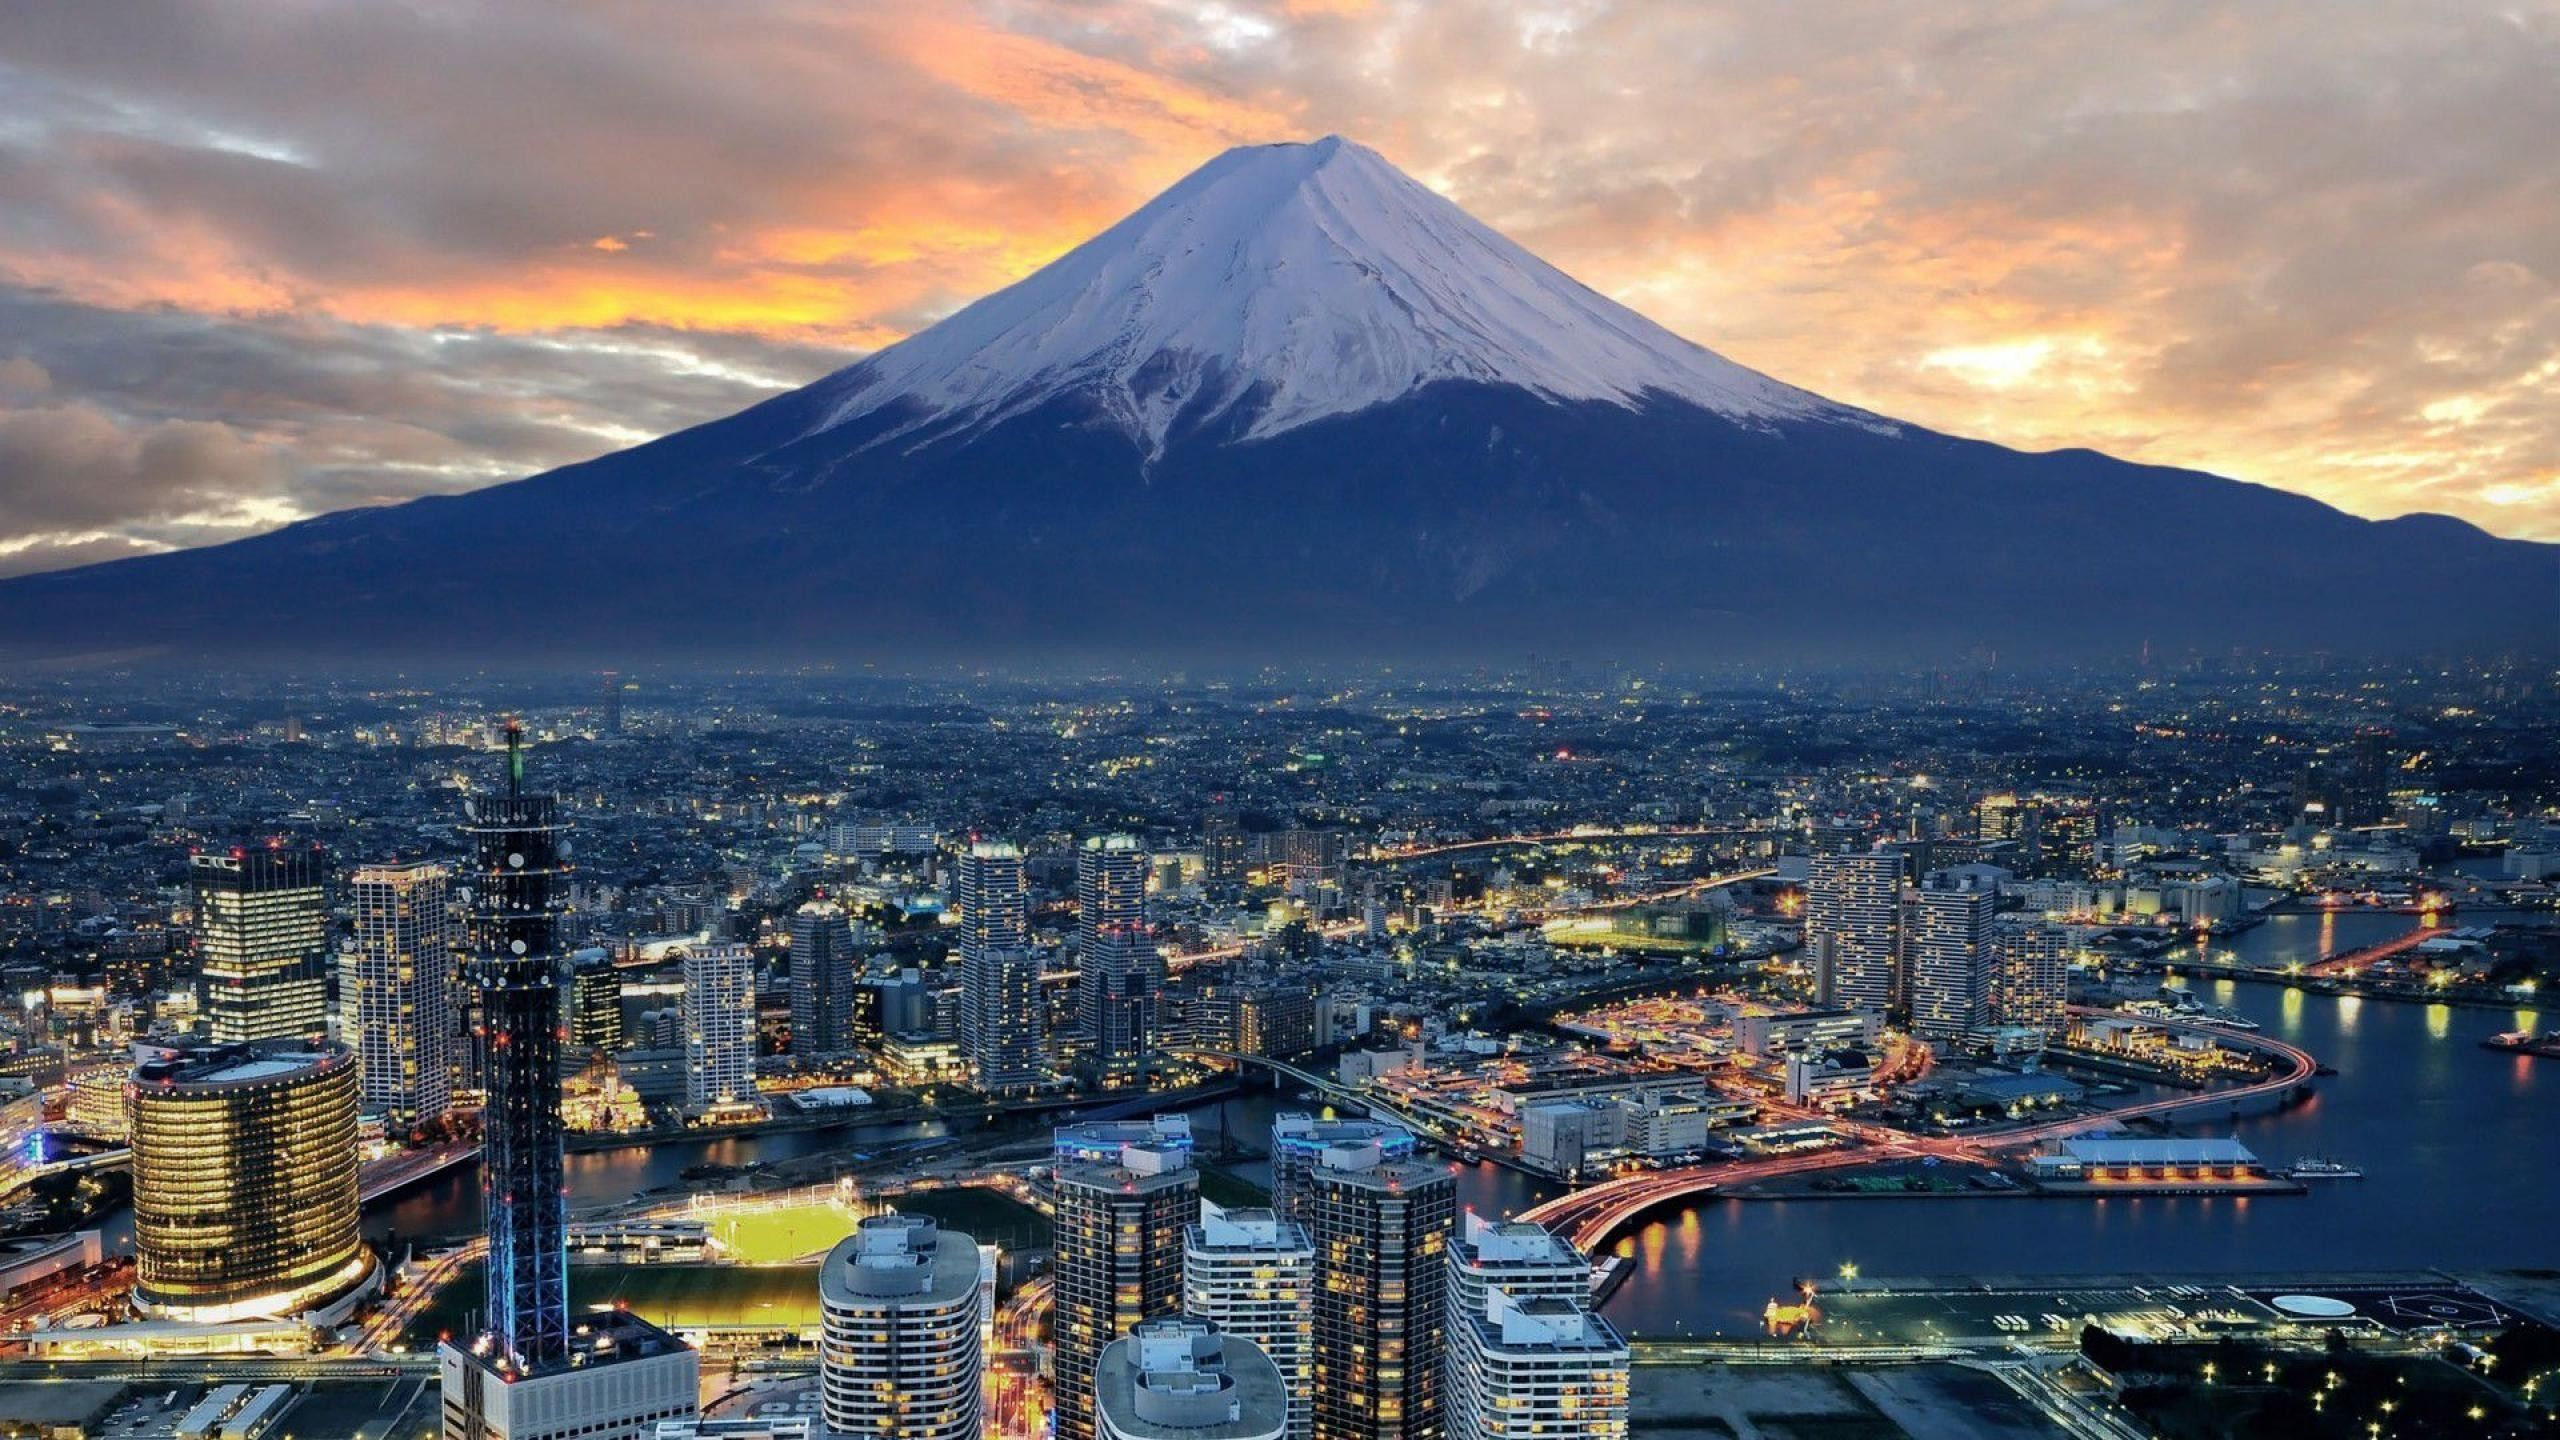 2560x1440 59+ Japan 4K Wallpapers on WallpaperPlay | Fuji mountain, Japan, Mount fuji